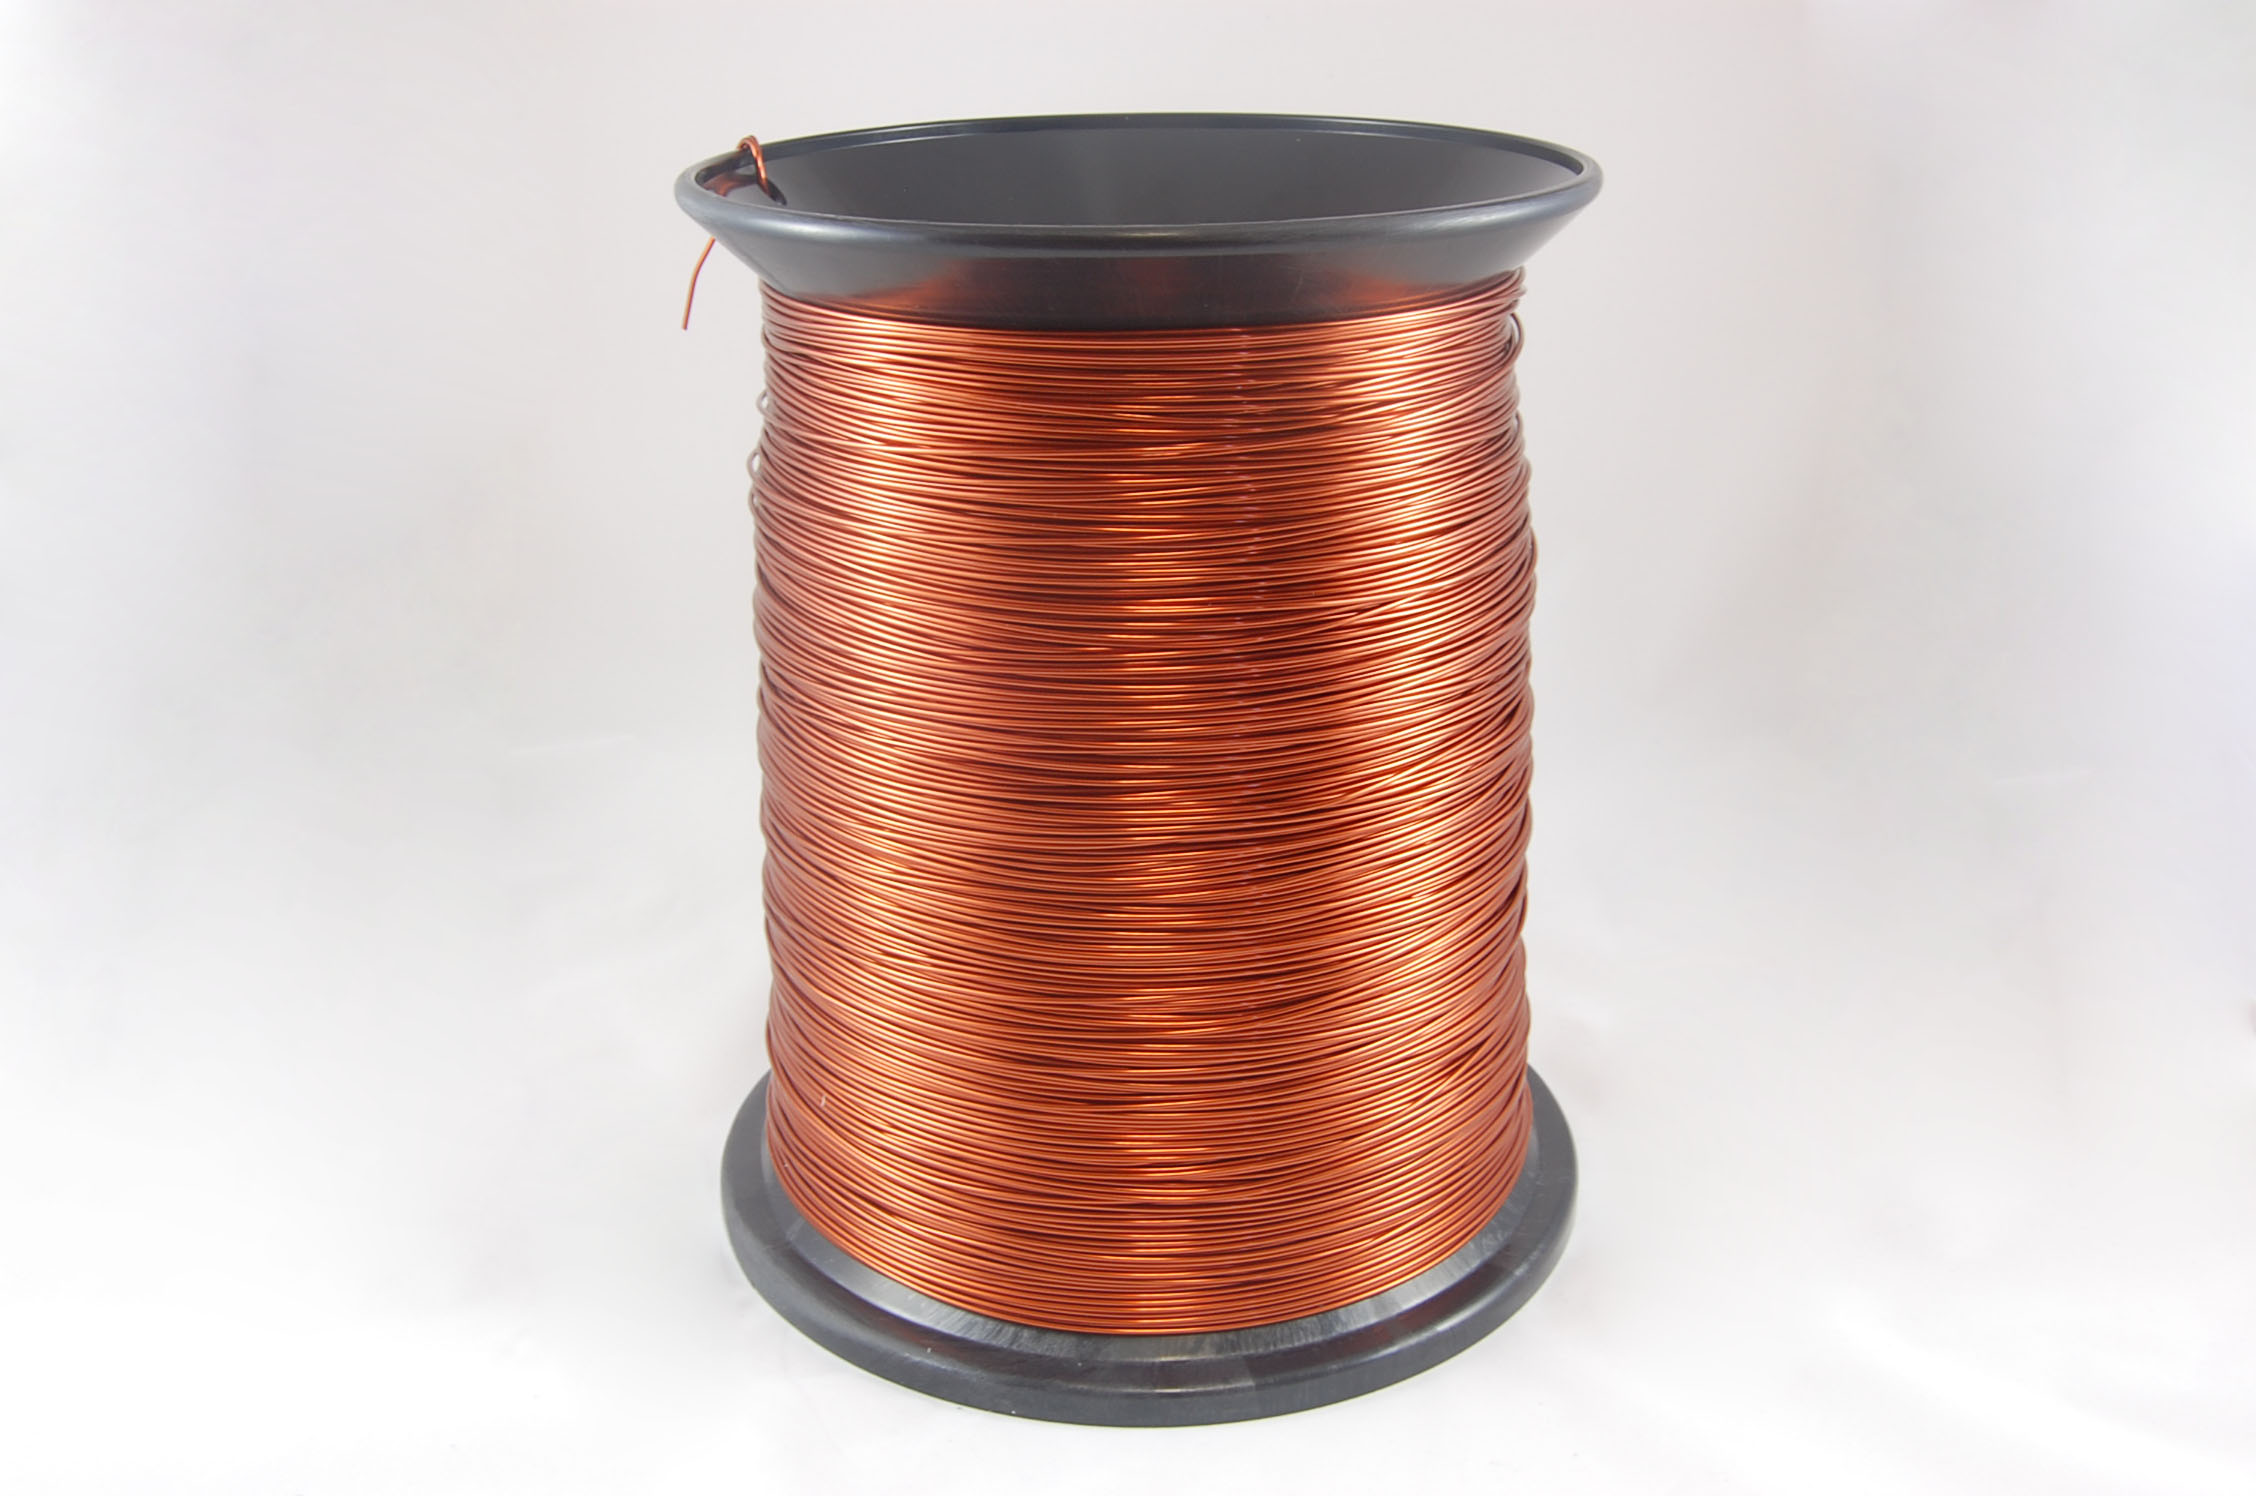 #17 Heavy GP/MR-200 Round MW 35 Copper Magnet Wire 200°C, copper, 85 LB pail (average wght.)